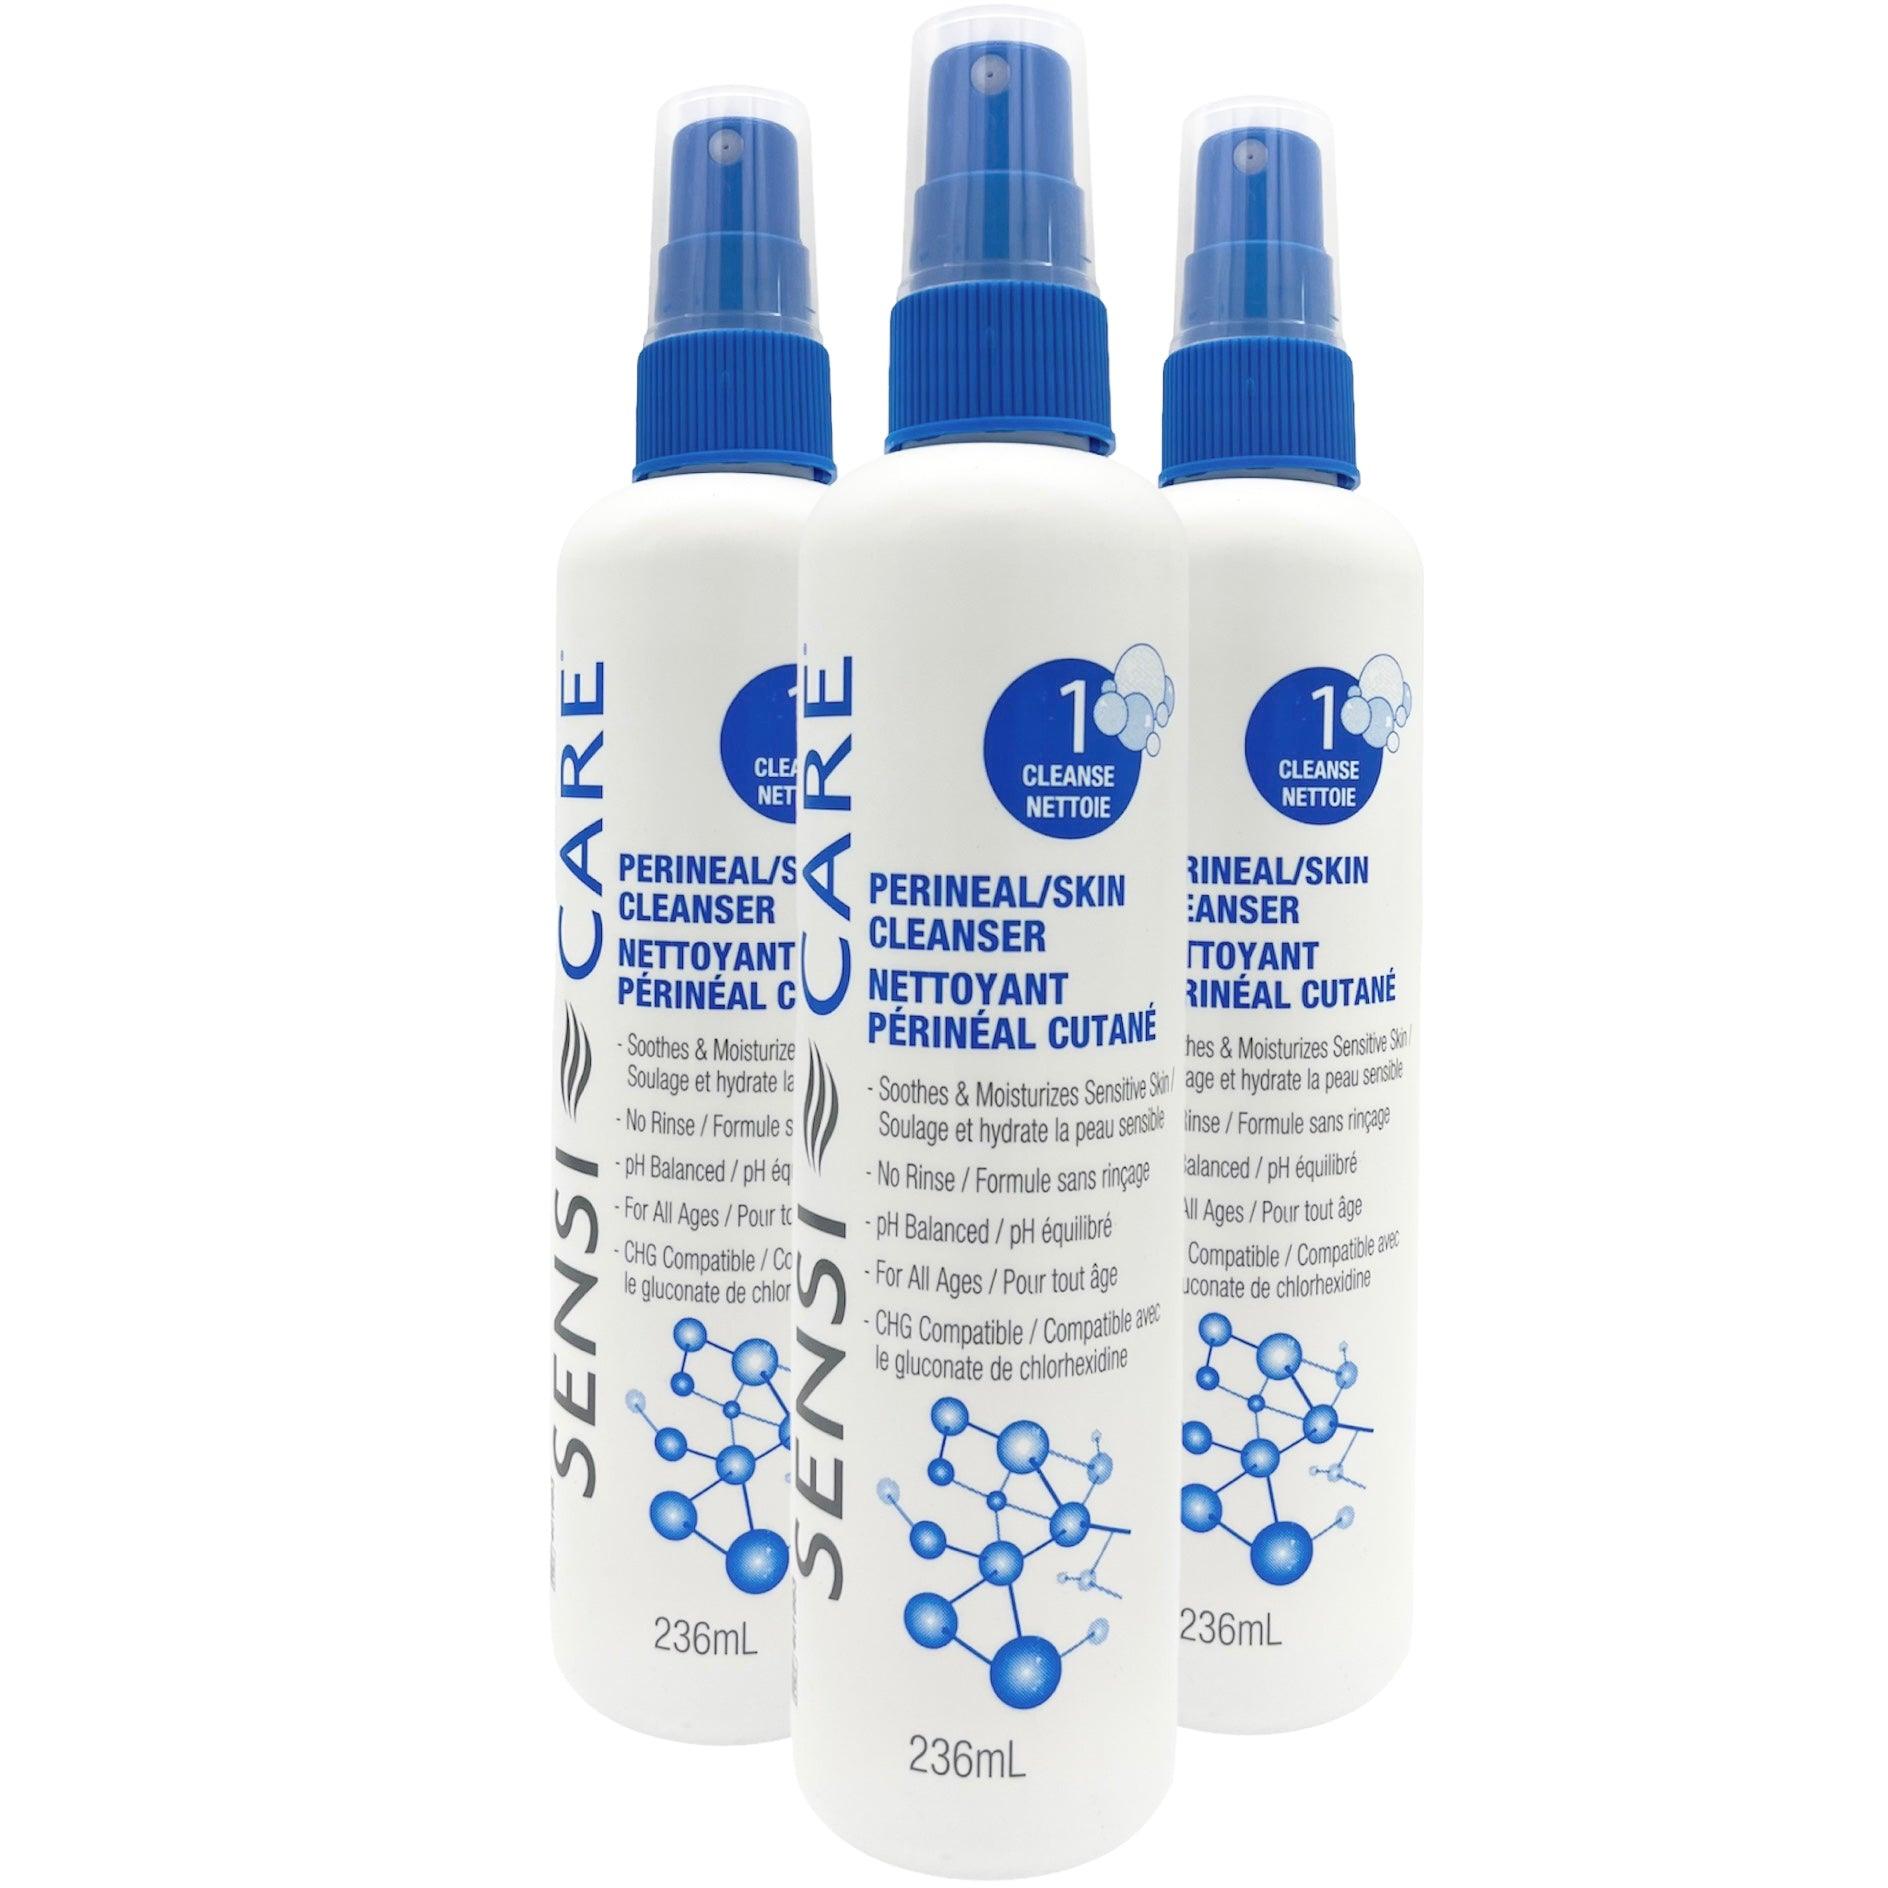 ConvaTec - Sensi-Care Perineal / Skin Cleanser (236mL)